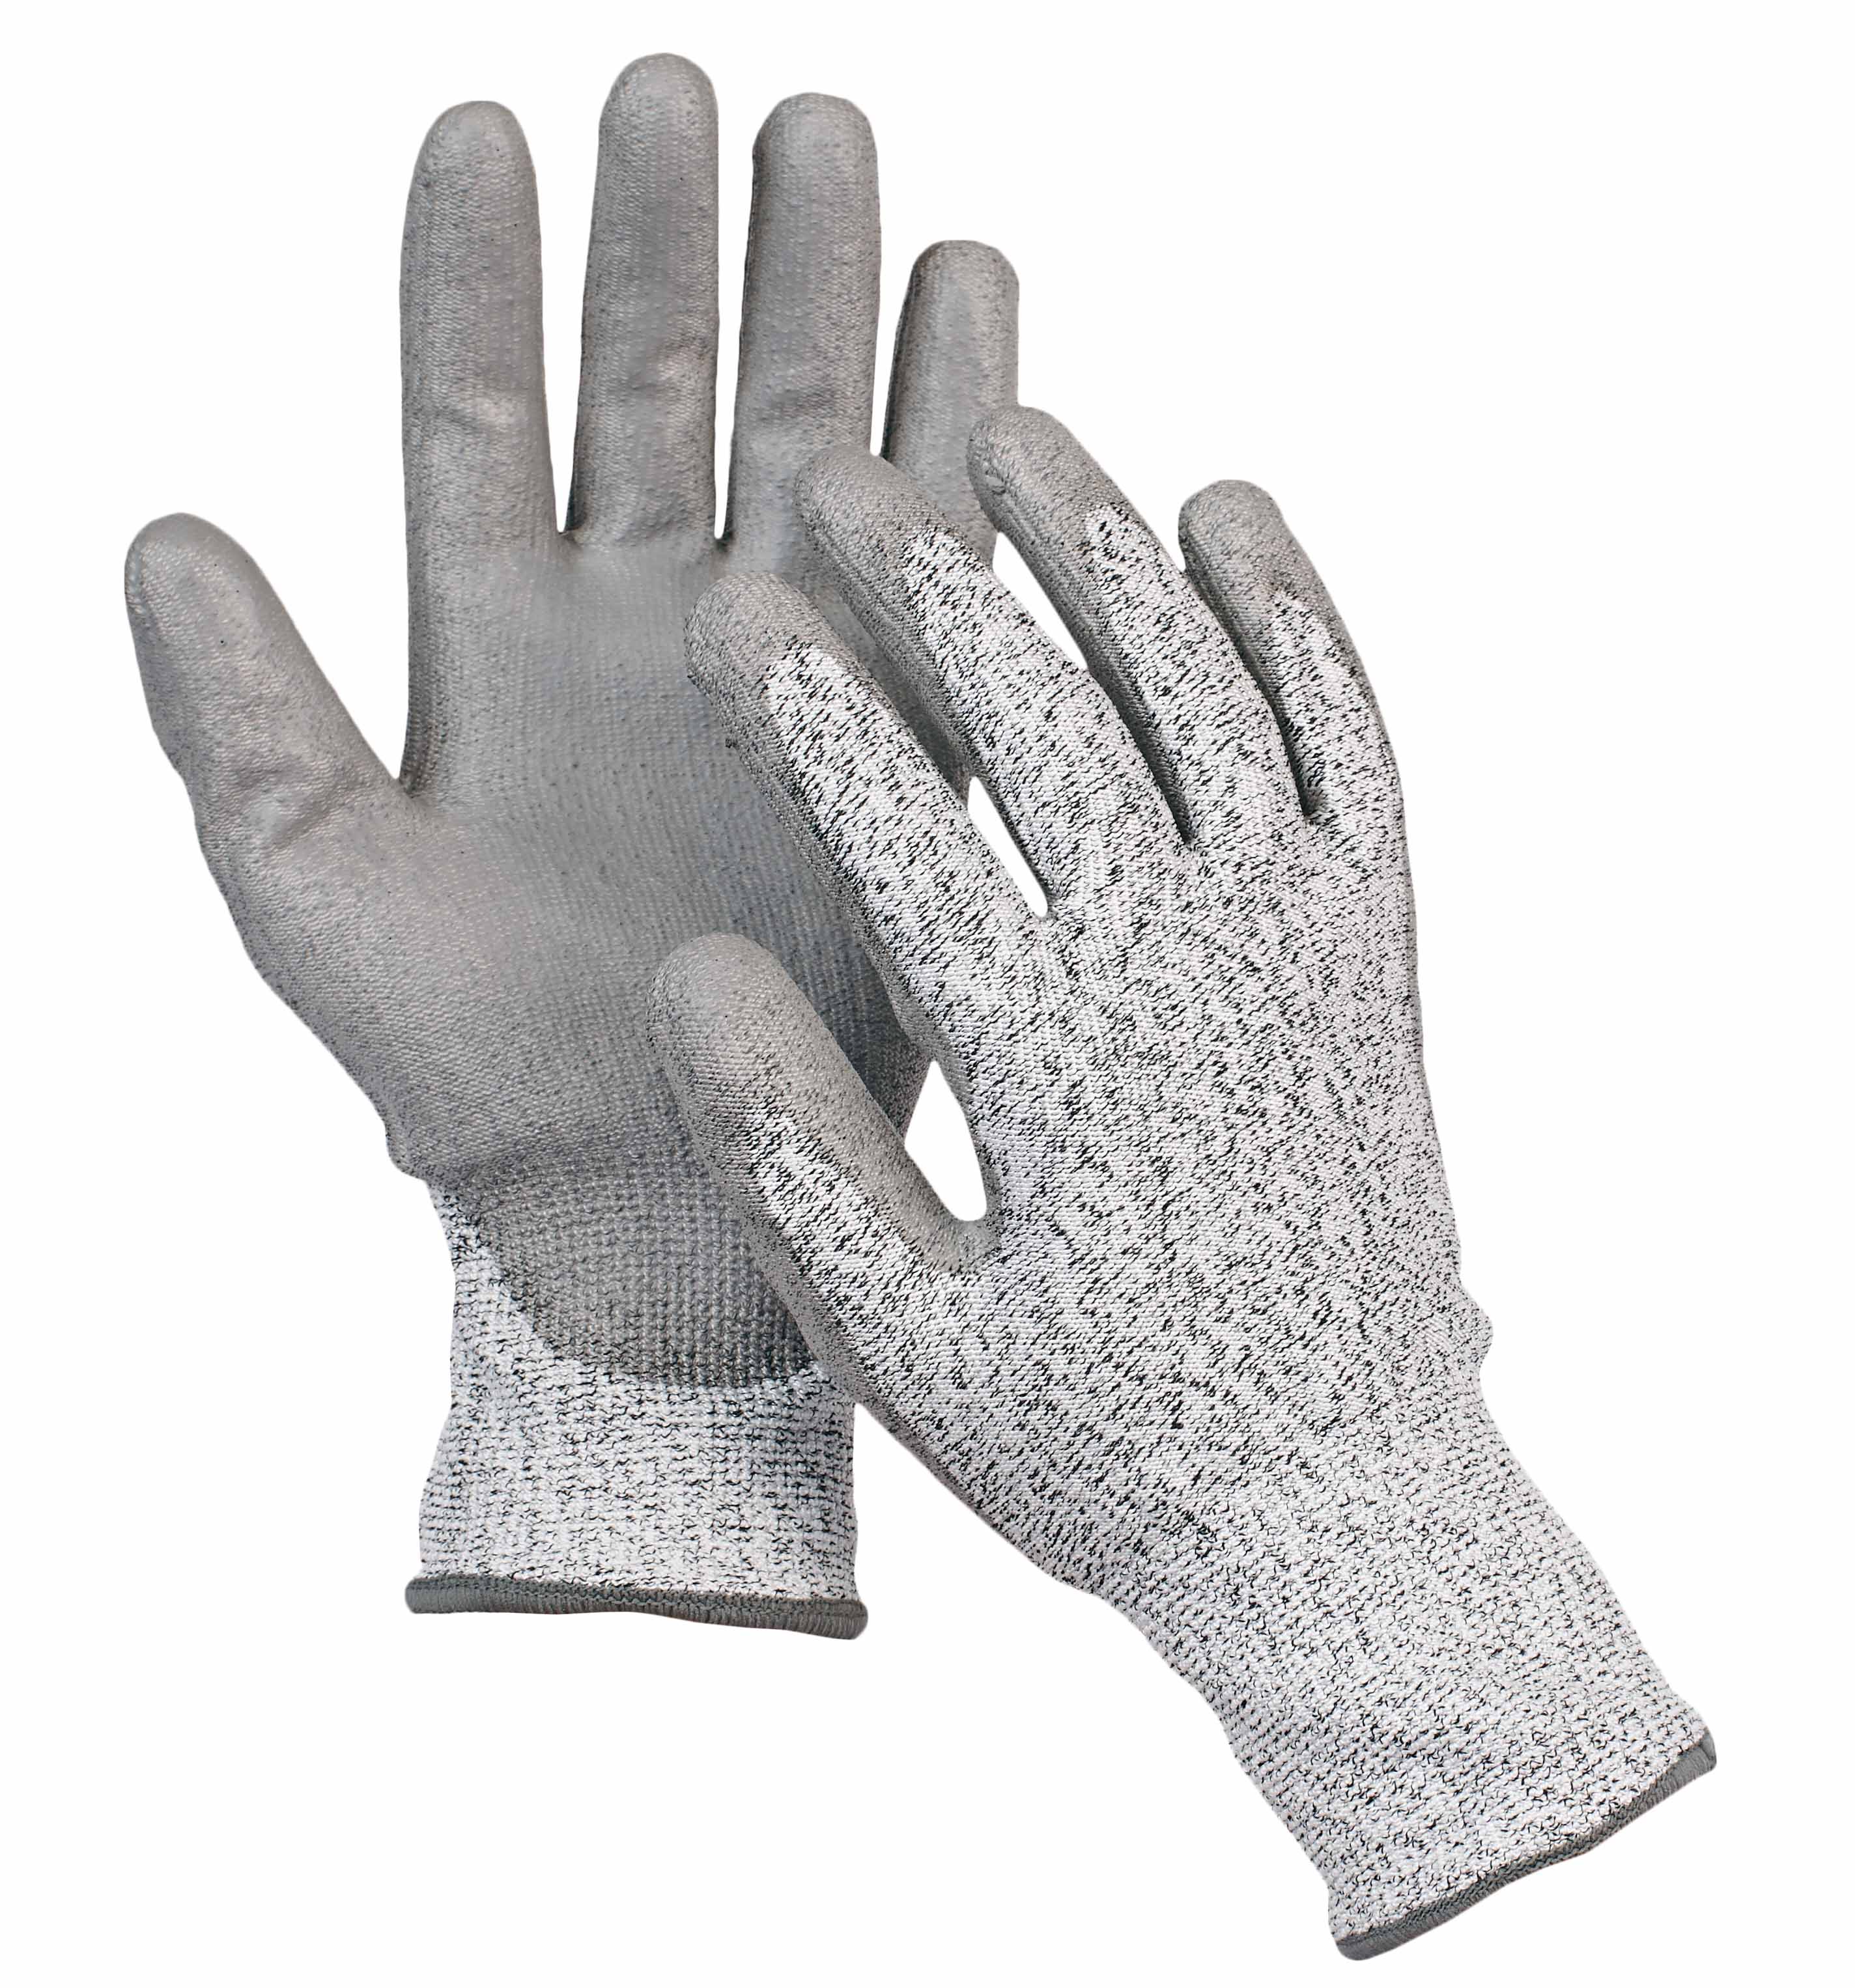 STINT rukavice